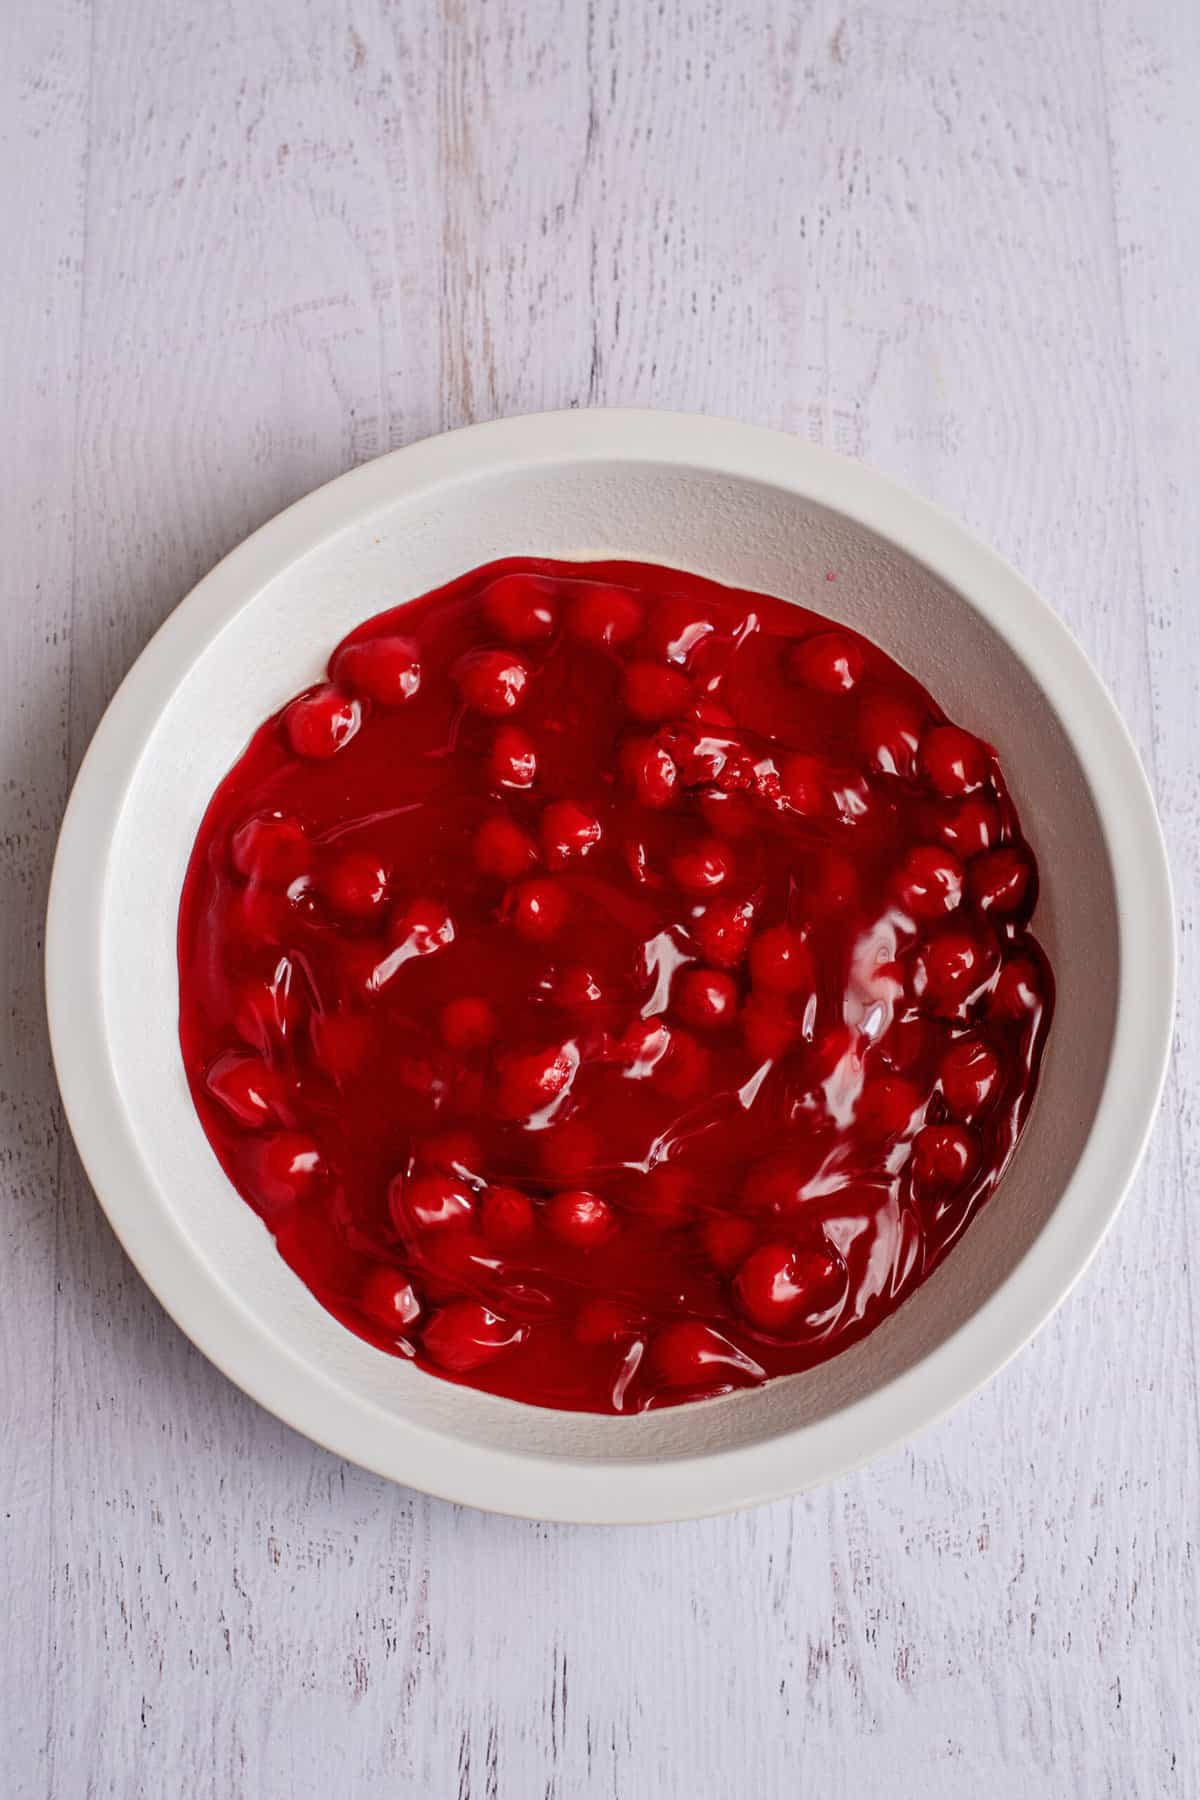 spread cherries in prepared dish